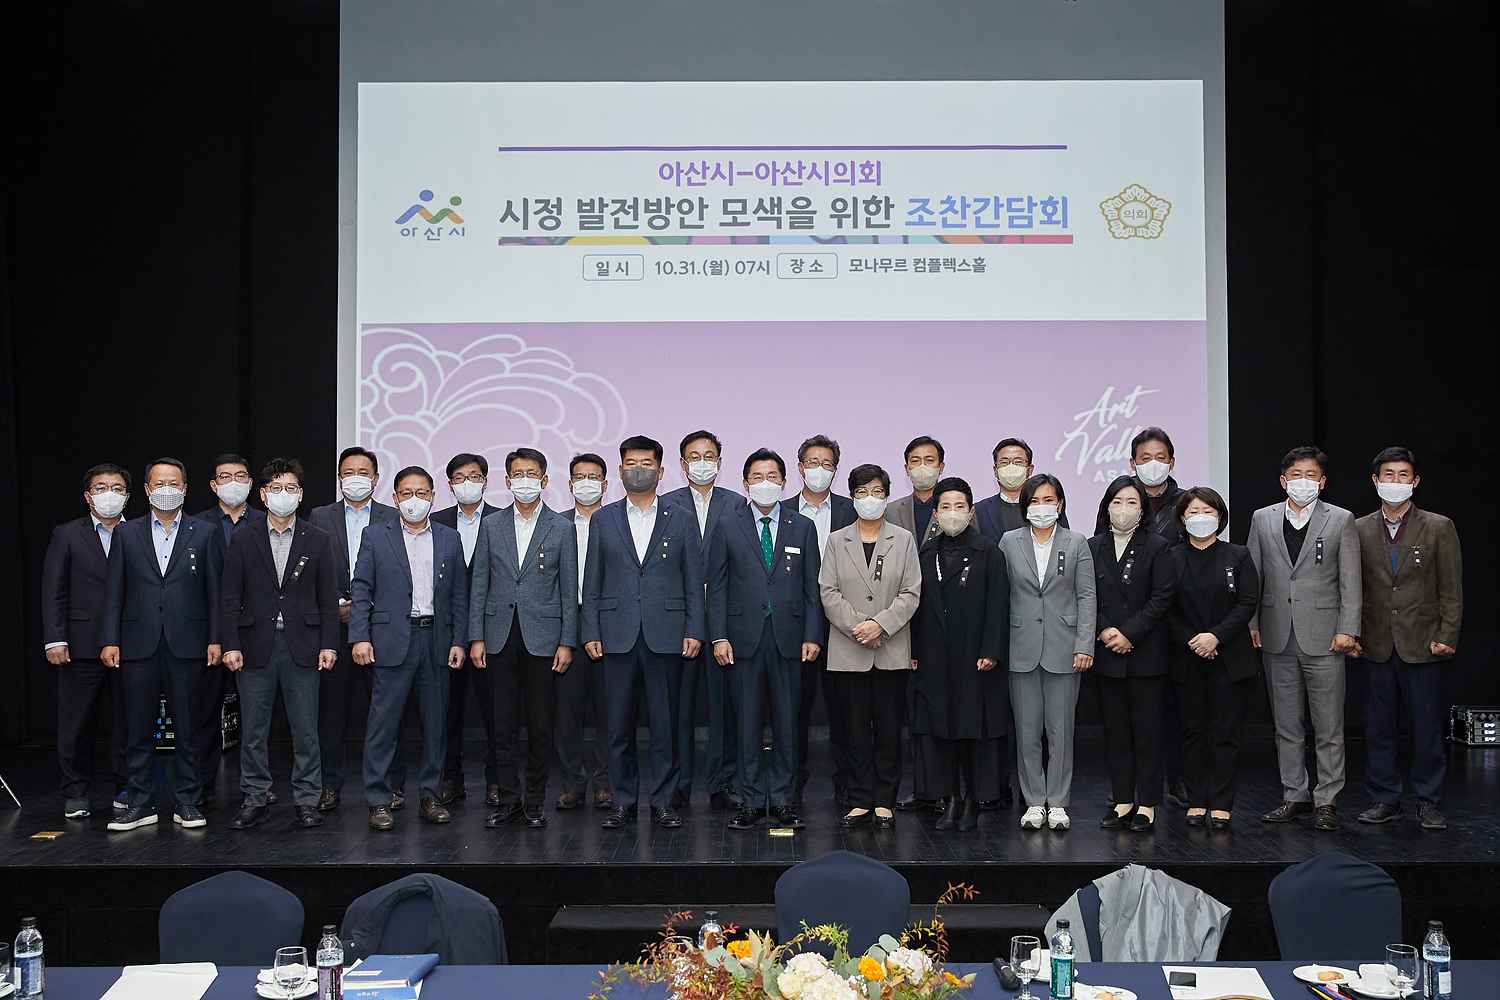 박경귀 아산시장, “의회와 협치하면서 소통 강화하겠다” 관련사진